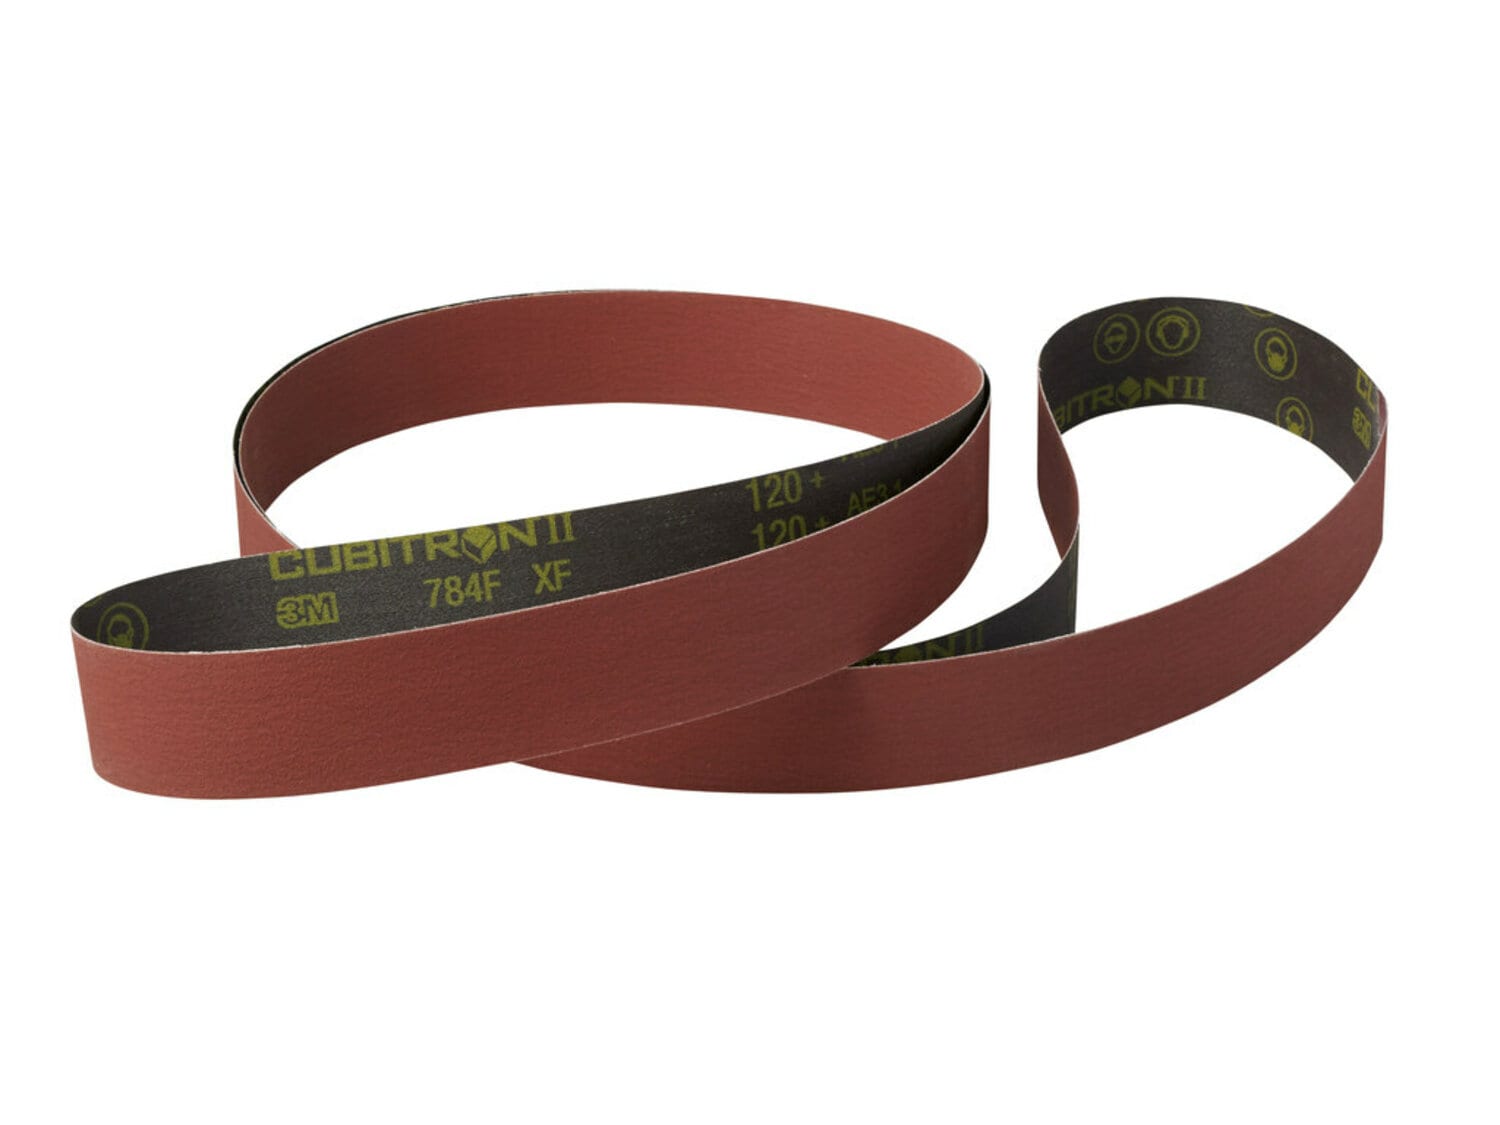 7100200911 - 3M Cubitron ll Cloth Belt 784F, 50+ YF-weight, 1 in x 23-5/16 in, Fabri-lok, Single-flex